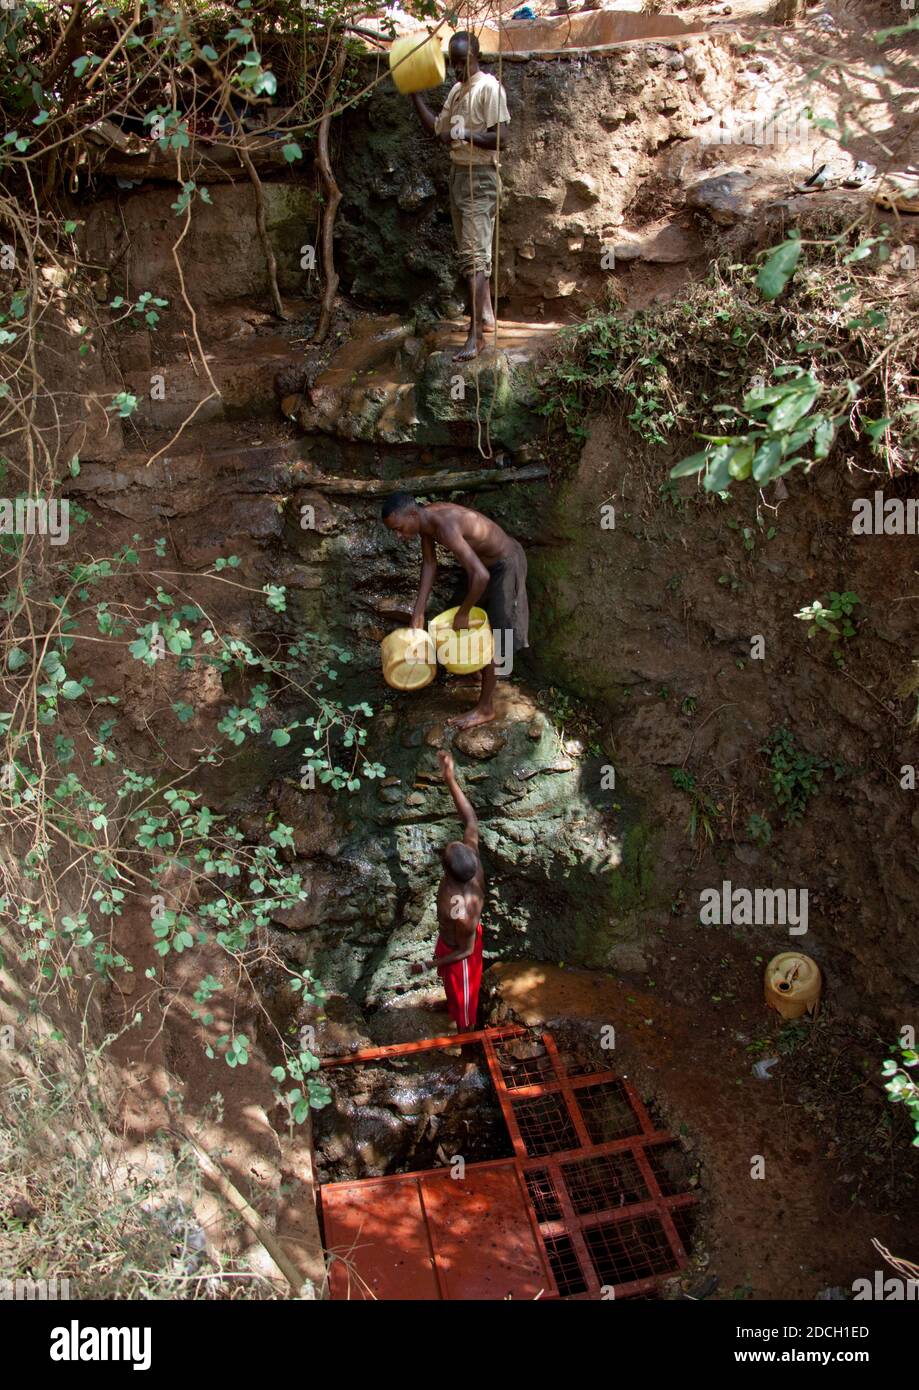 Des hommes collectant de l'eau dans un puits de chant Borana, comté de Marsabit, Marsabit, Kenya Banque D'Images